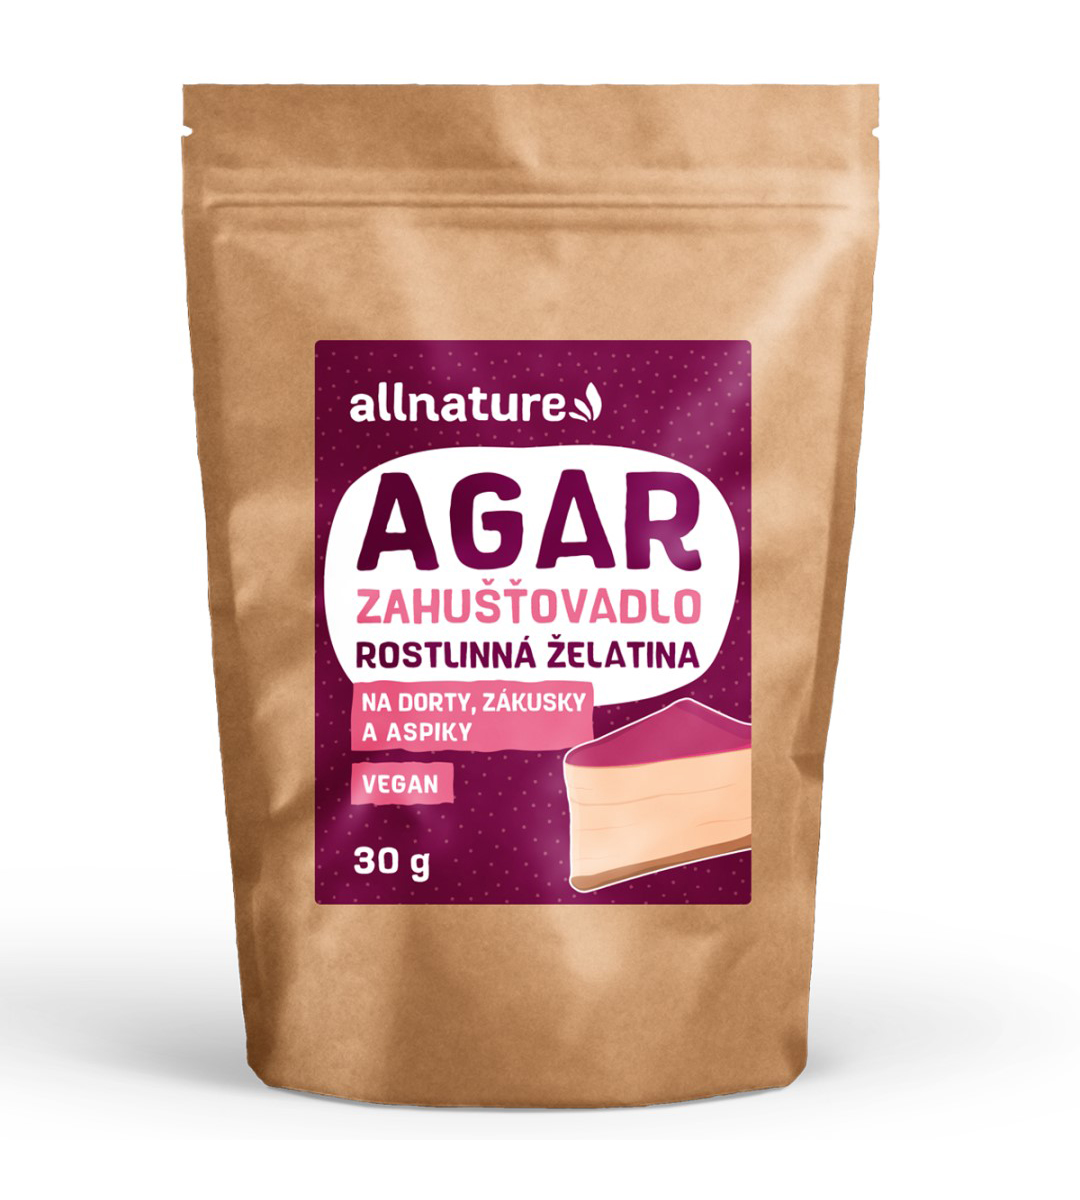 Allnature Agar rostlinná želatina 30 g Allnature